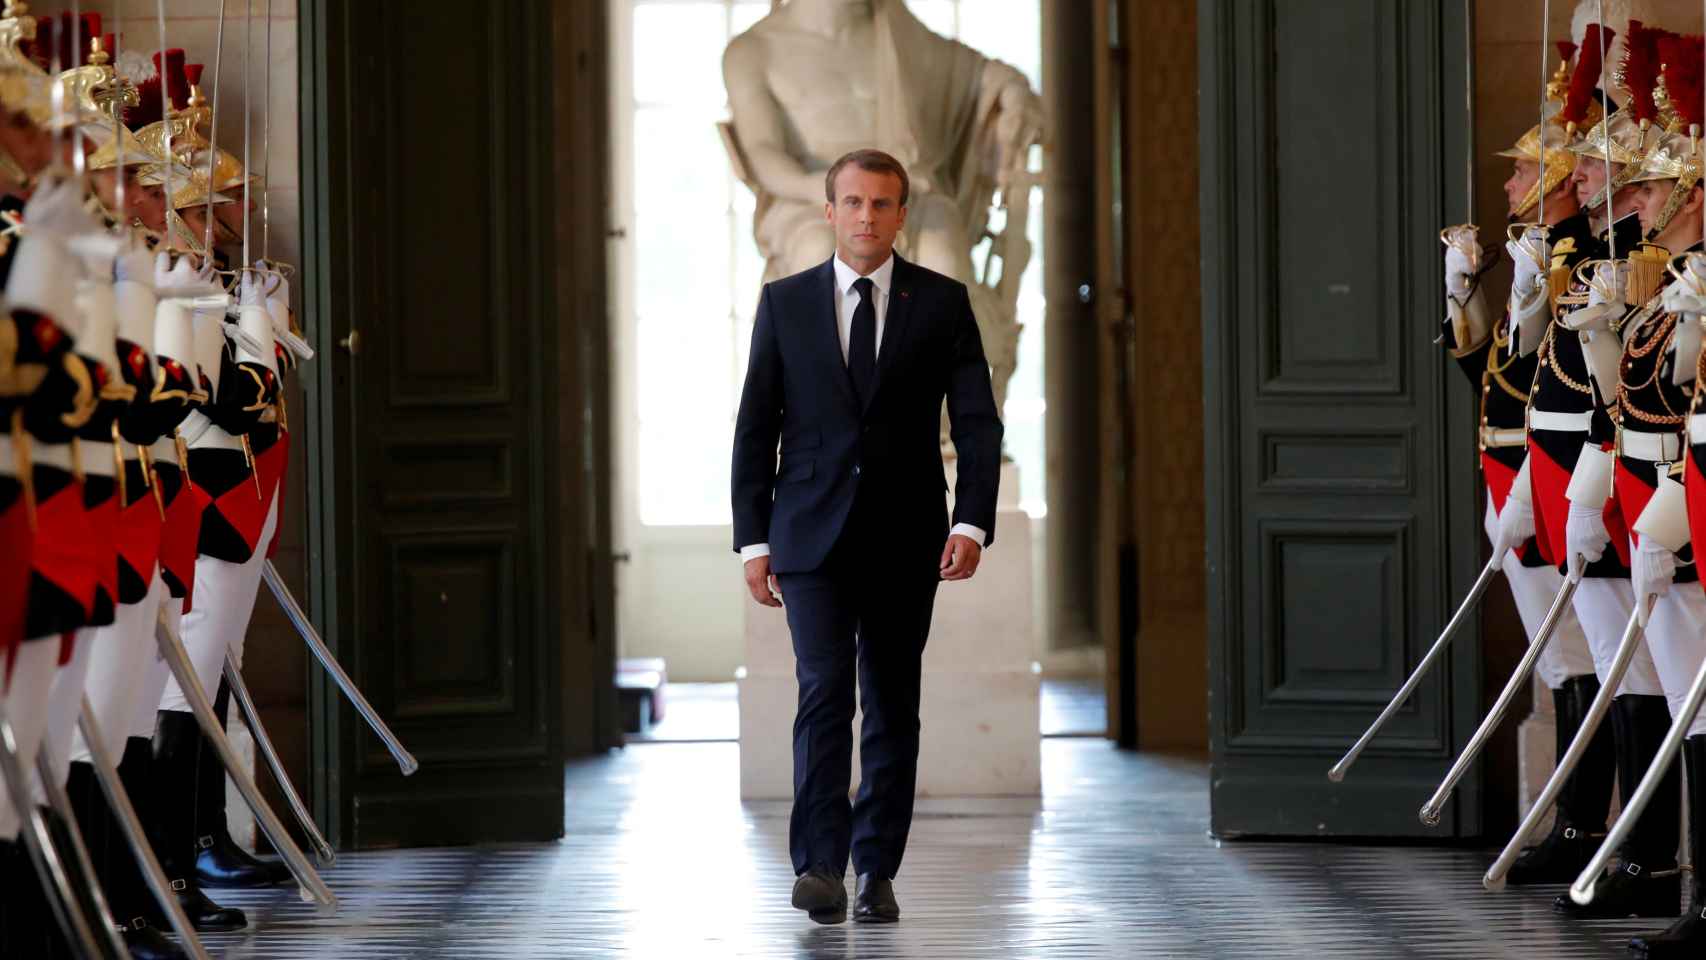 Macron, momentos antes de su discurso en el Parlamento francés.